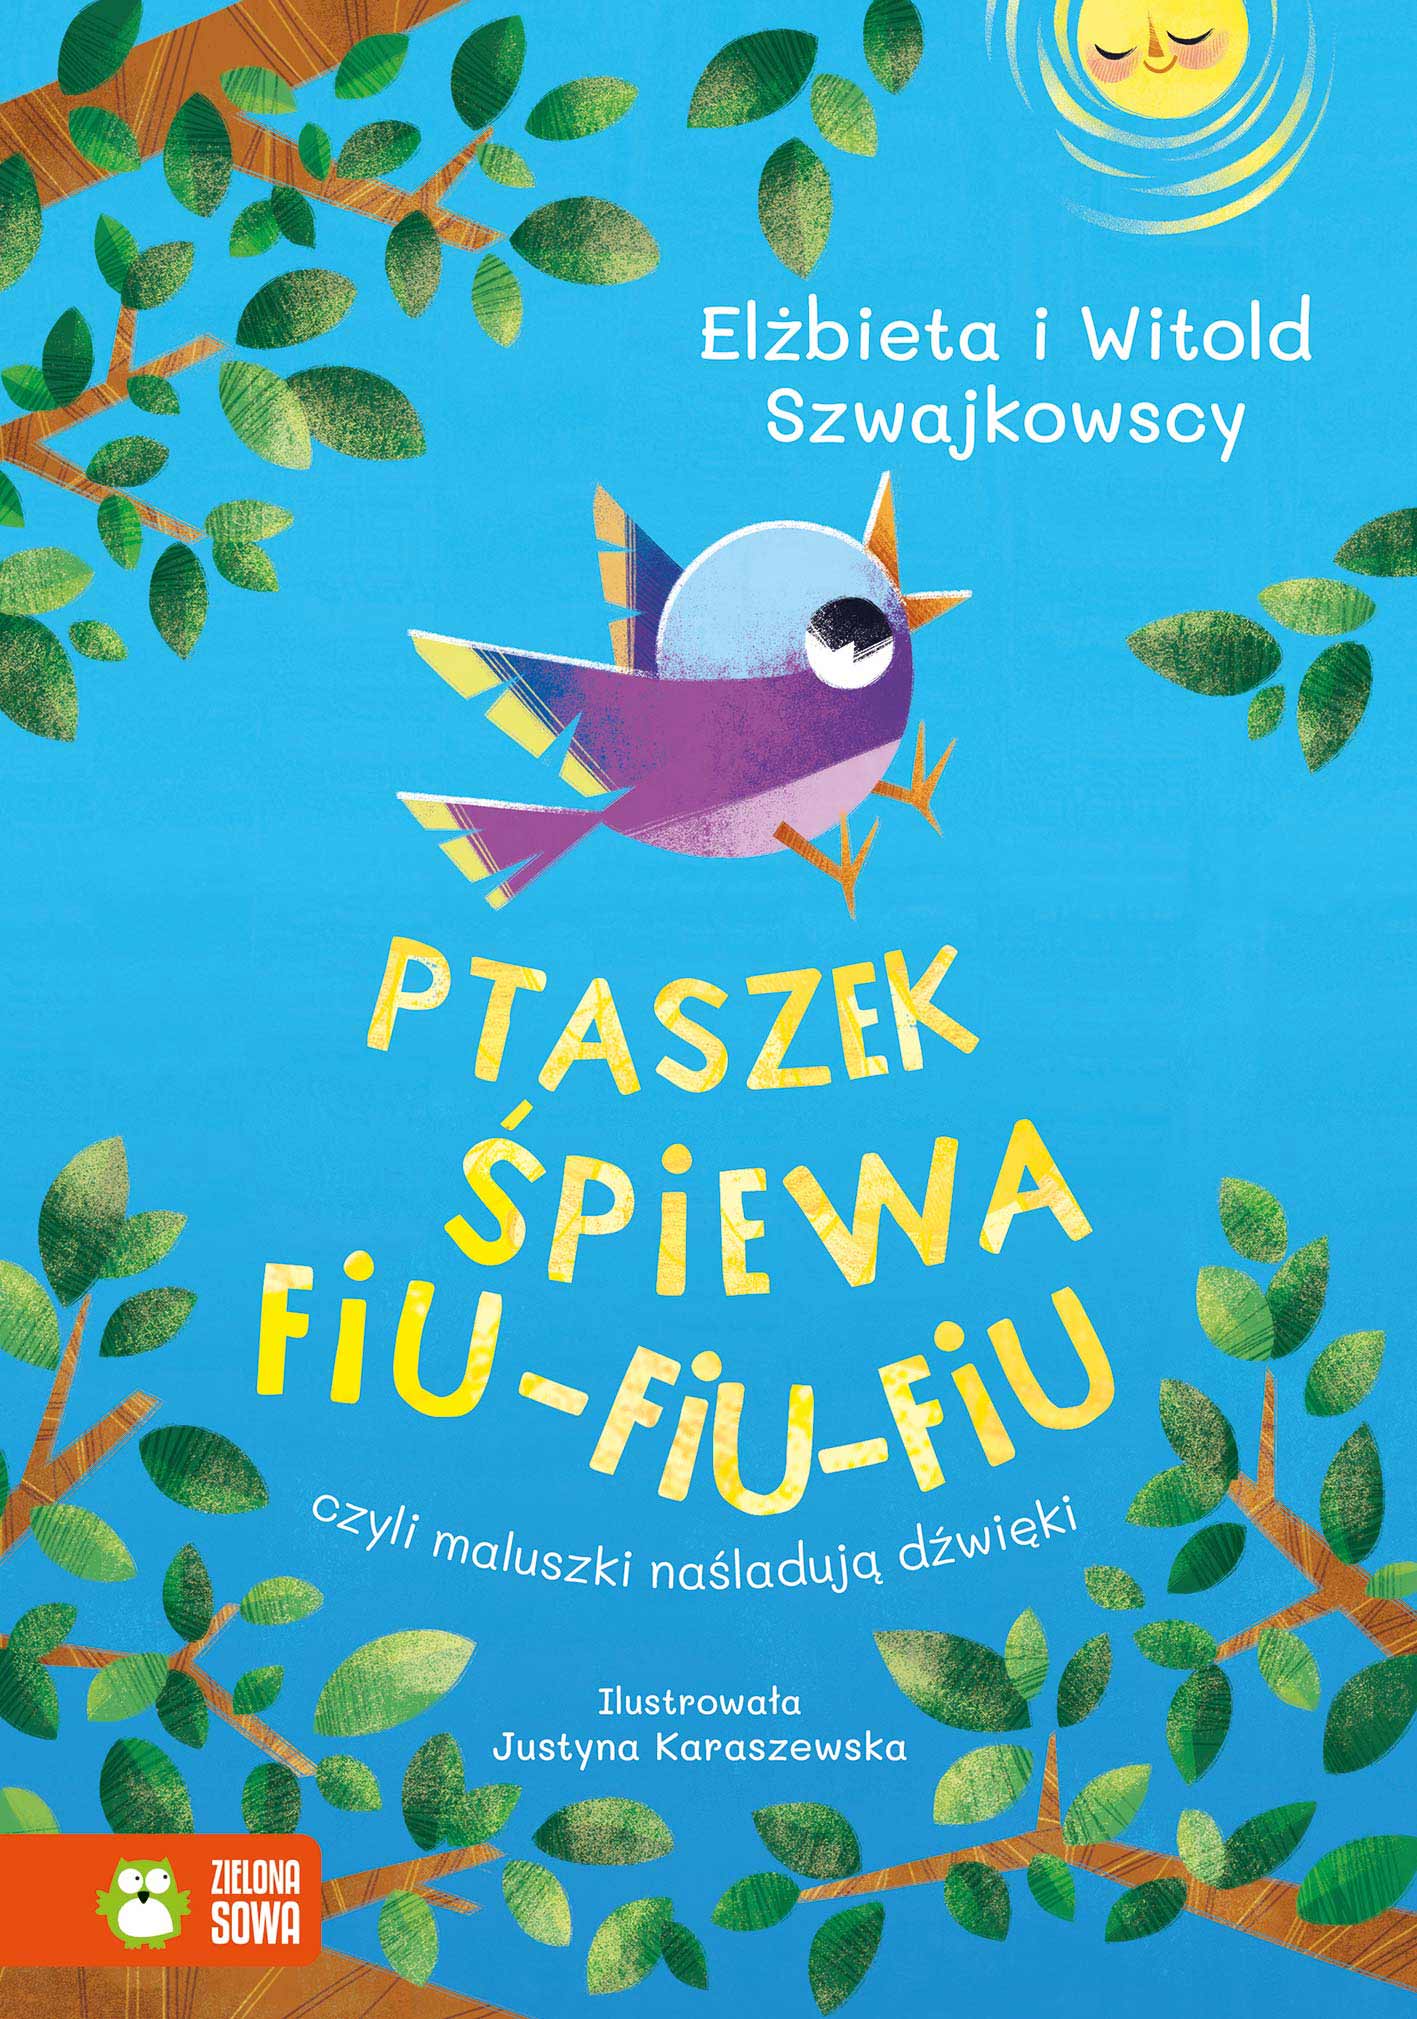 Ptaszek śpiewa fiu-fiu-fiu, czyli maluszki naśladują dźwięki - wierszyki dla dzieci